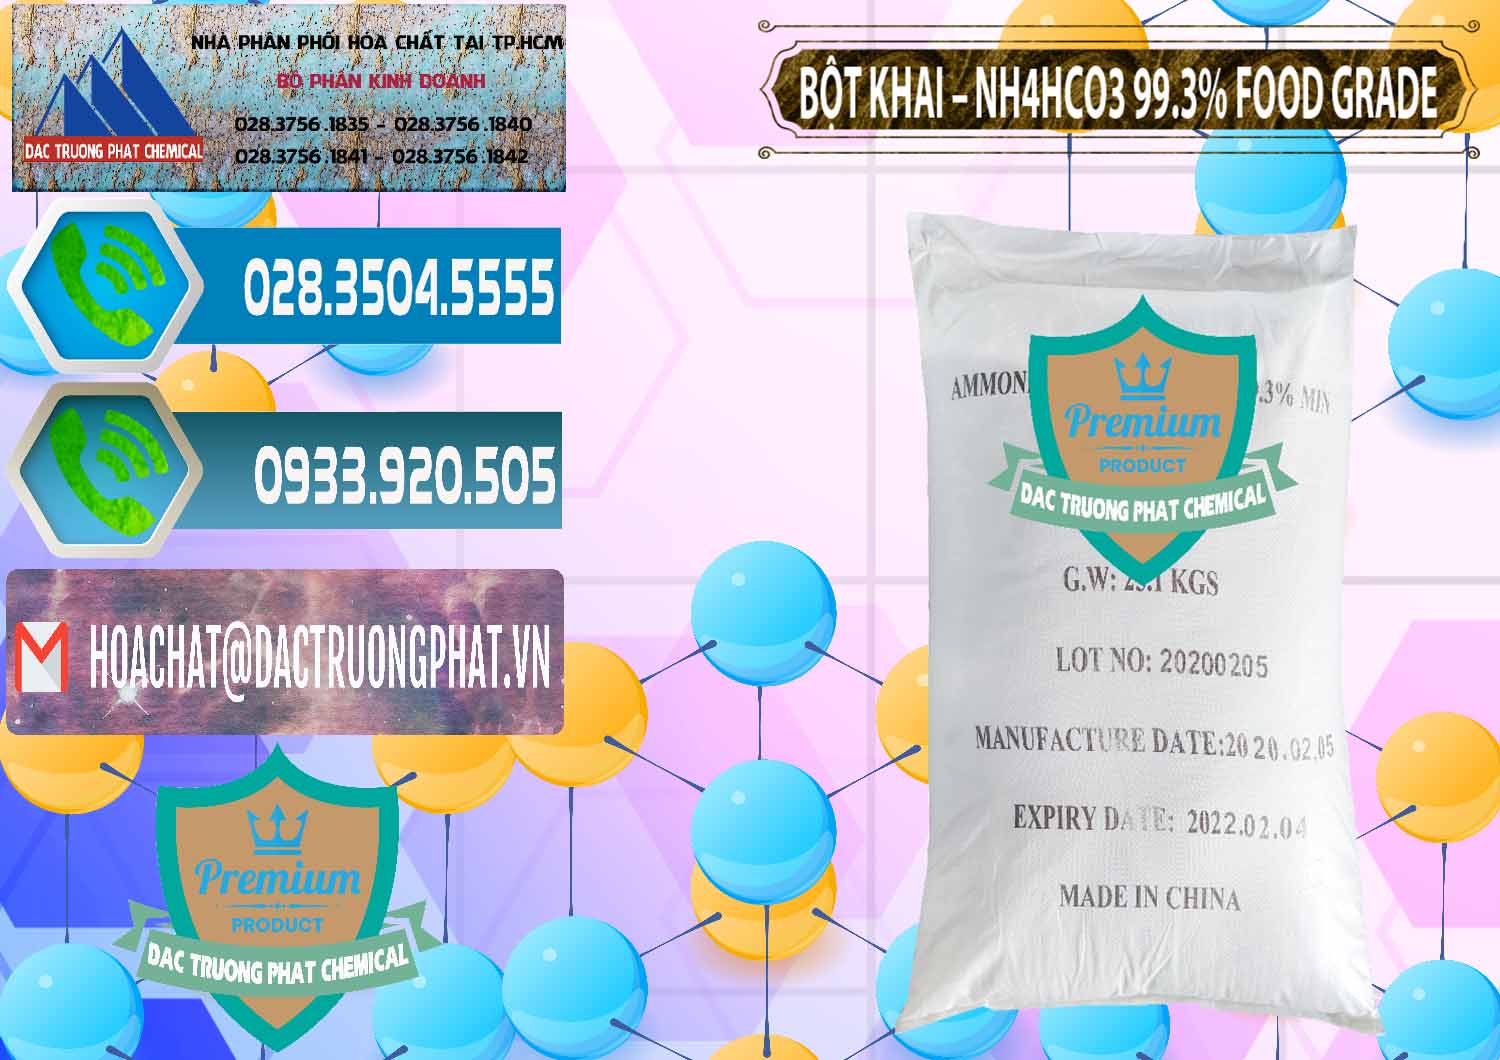 Cty bán _ cung cấp Ammonium Bicarbonate – Bột Khai NH4HCO3 Food Grade Trung Quốc China - 0019 - Nơi cung cấp _ bán hóa chất tại TP.HCM - congtyhoachat.net